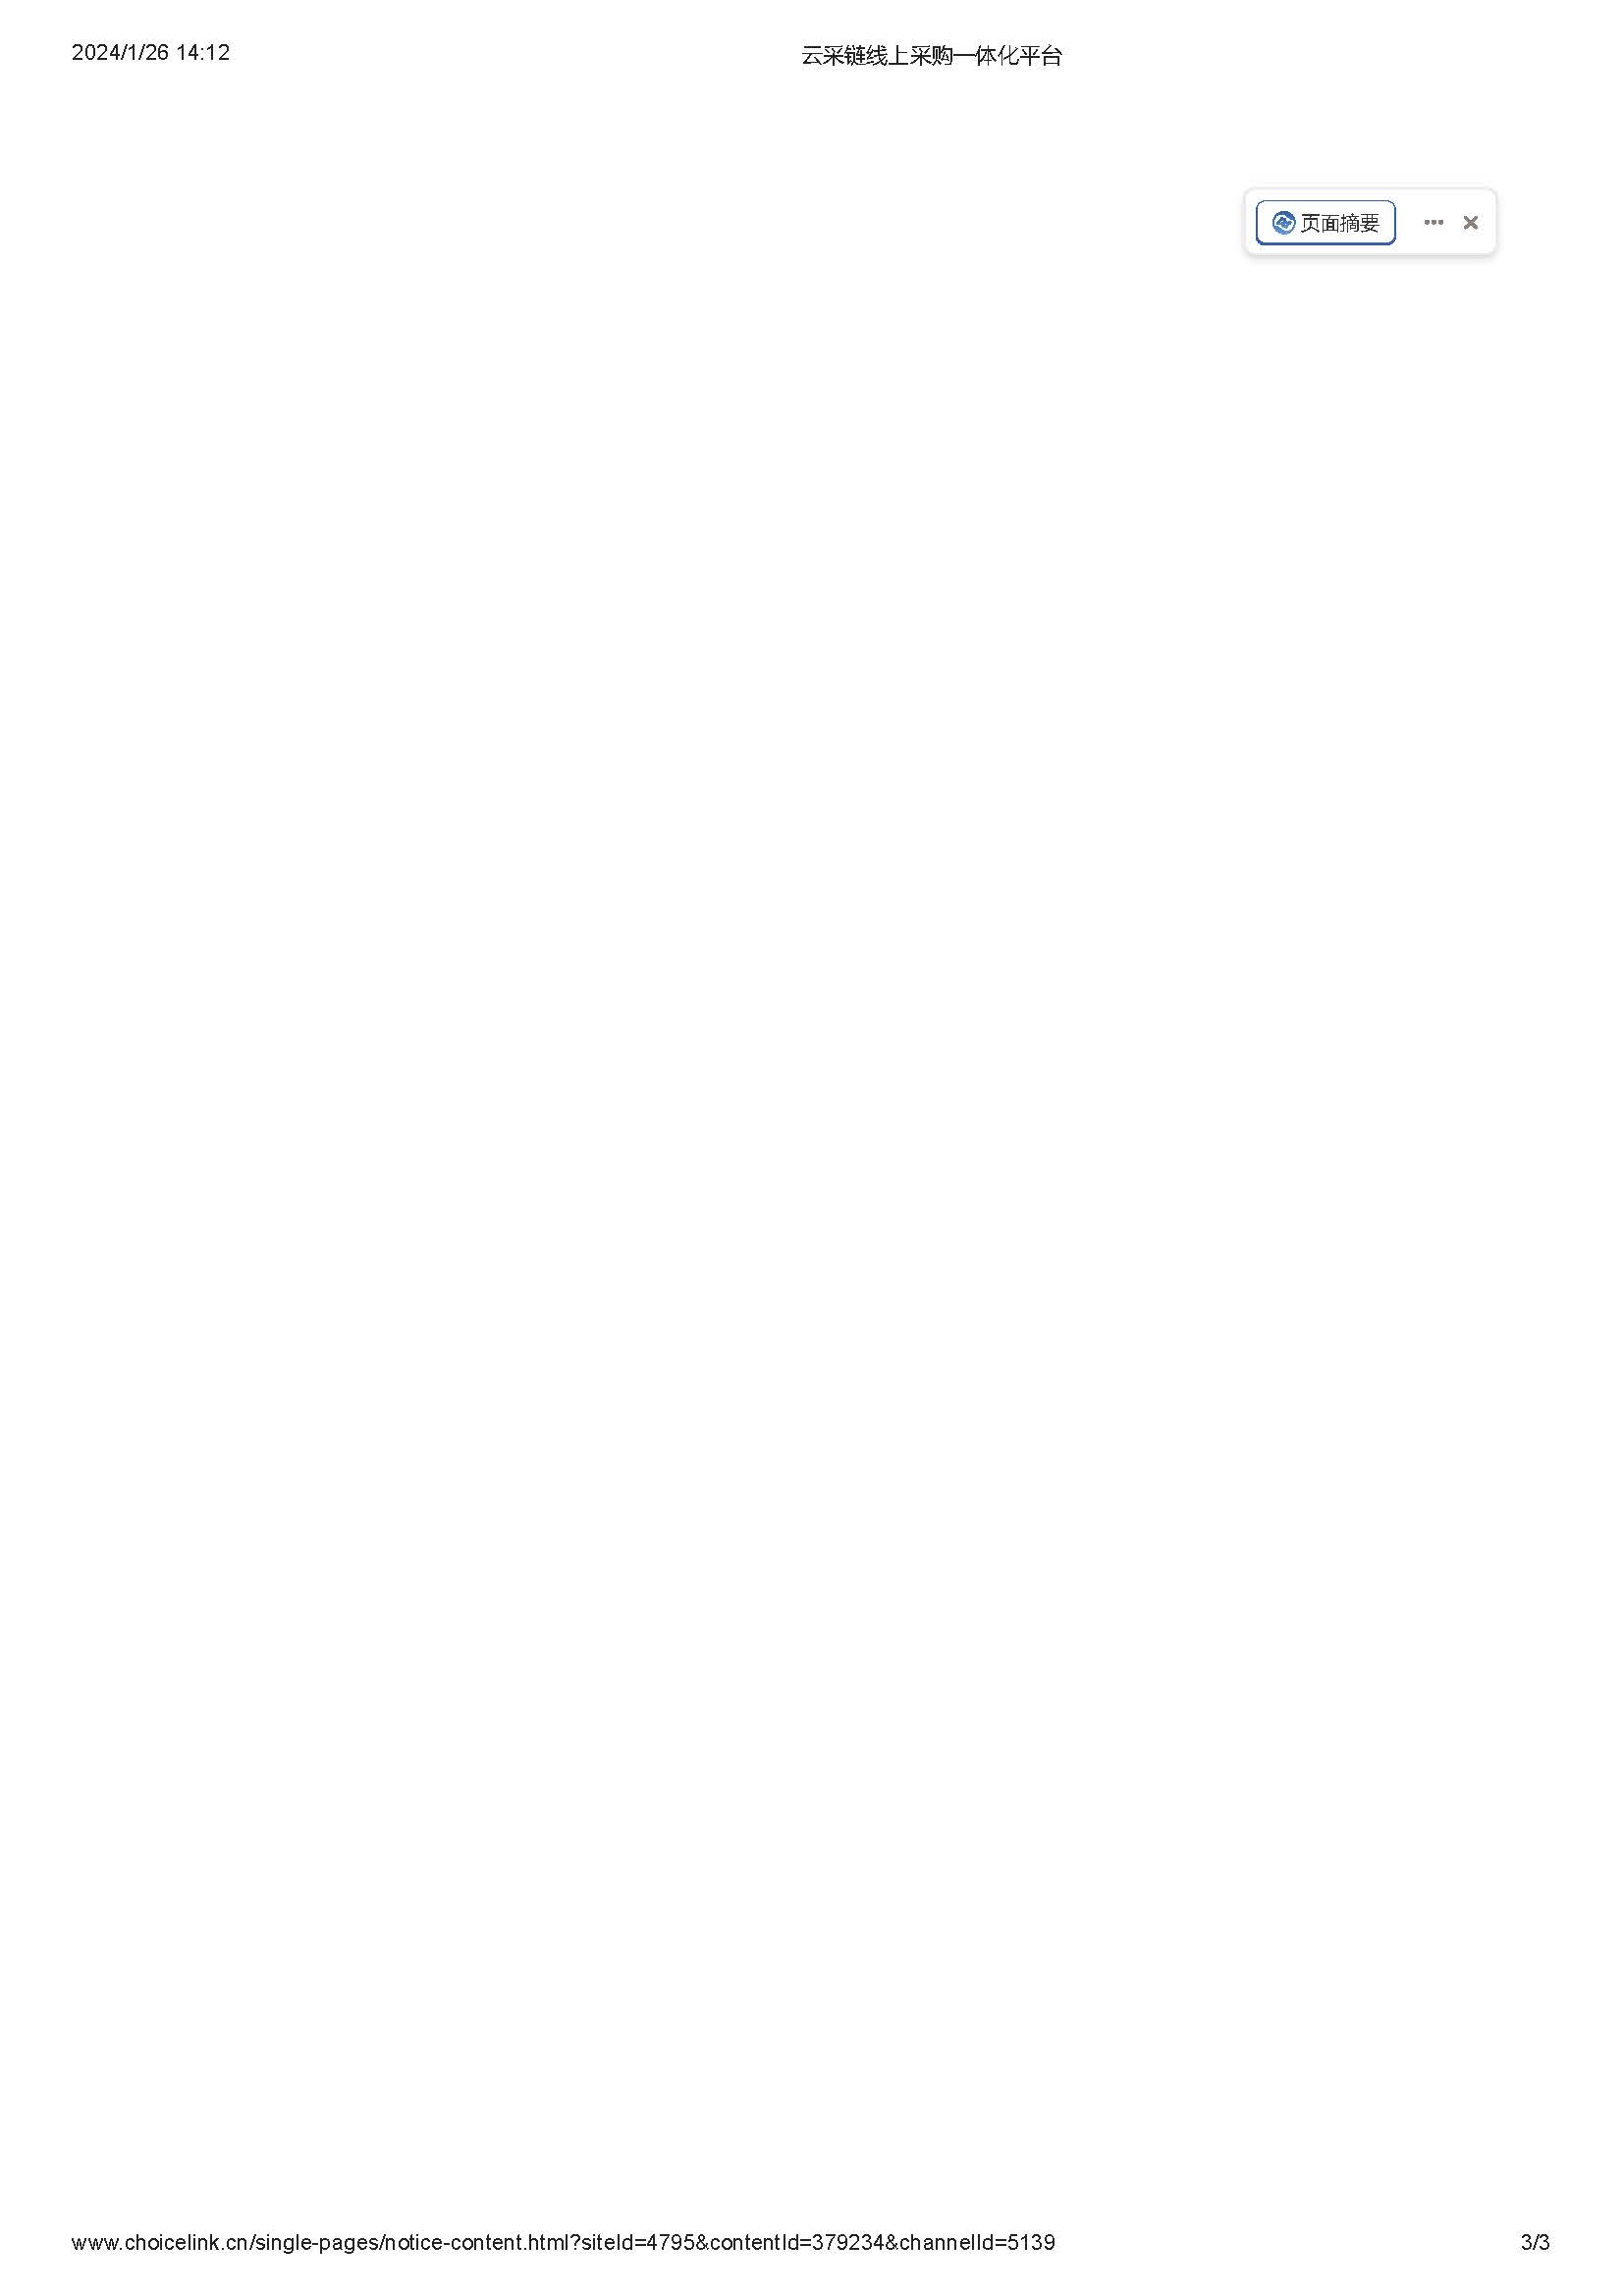 11.27广东省广裕集团佛山明康实业有限公司胶凳采购项目结果公告_页面_3.jpg